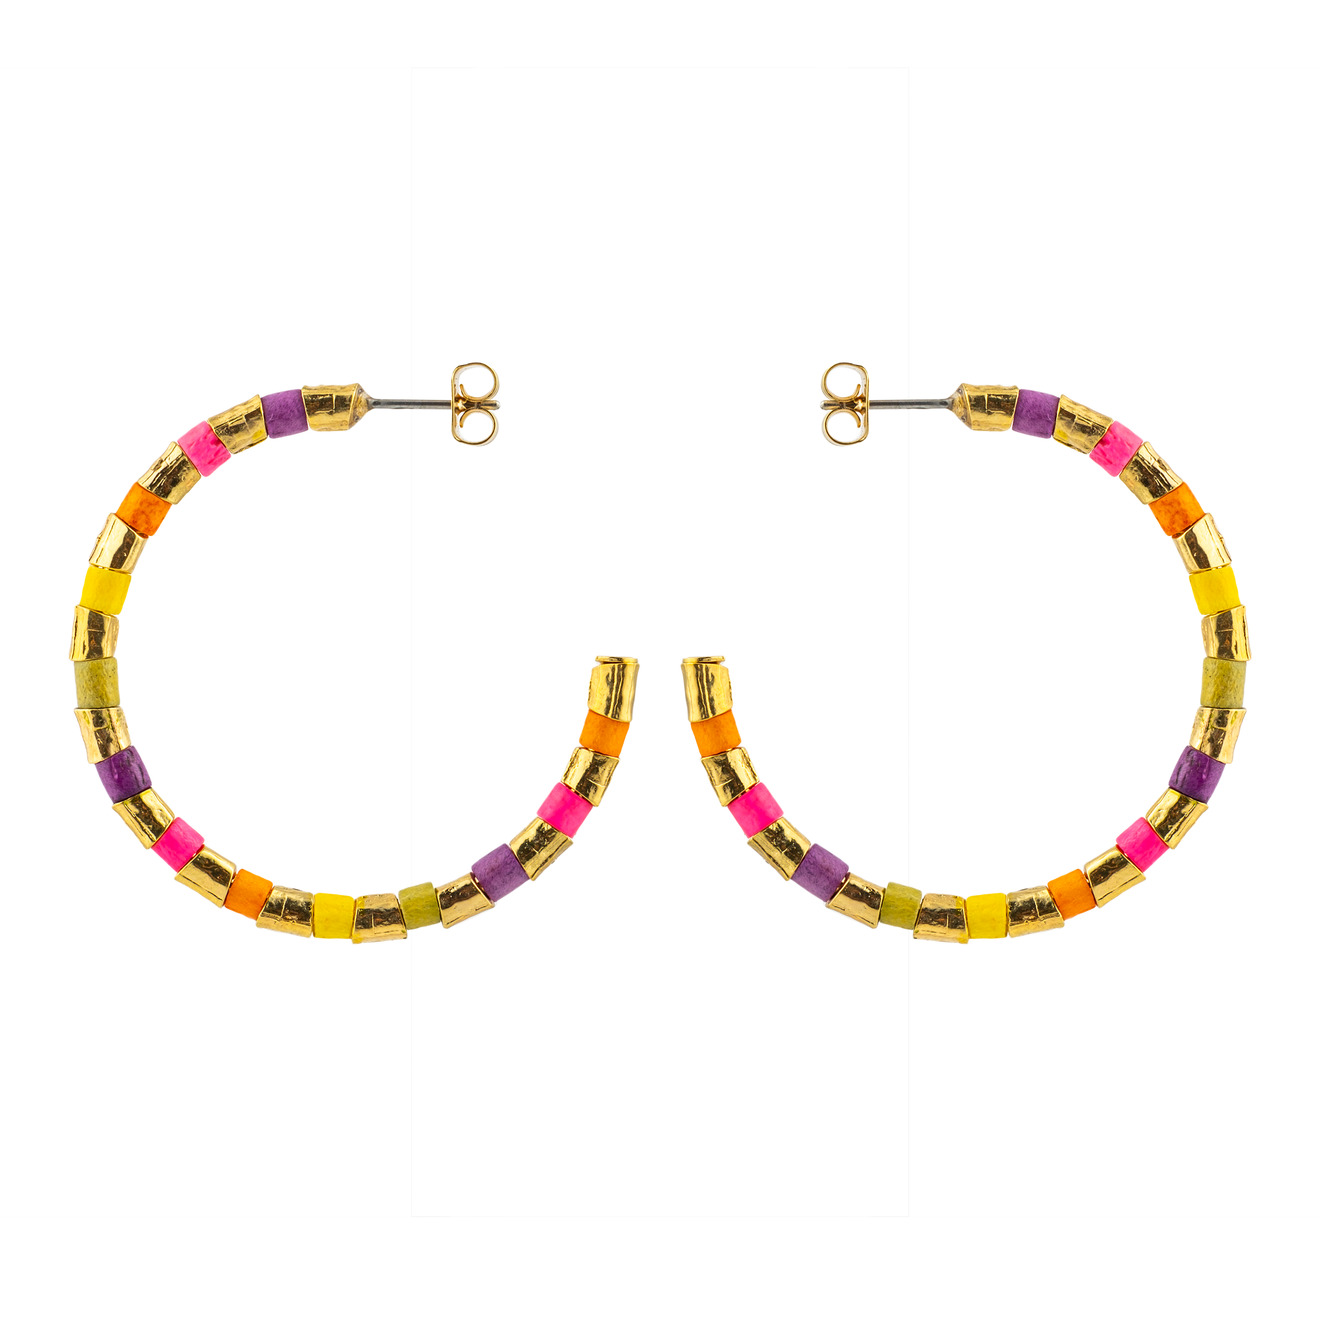 sonia rykiel позолоченные серьги с подвесками сердцами и разноцветной эмалью SONIA RYKIEL Серьги-хупы из золотистых бусин и разноцветного бисера